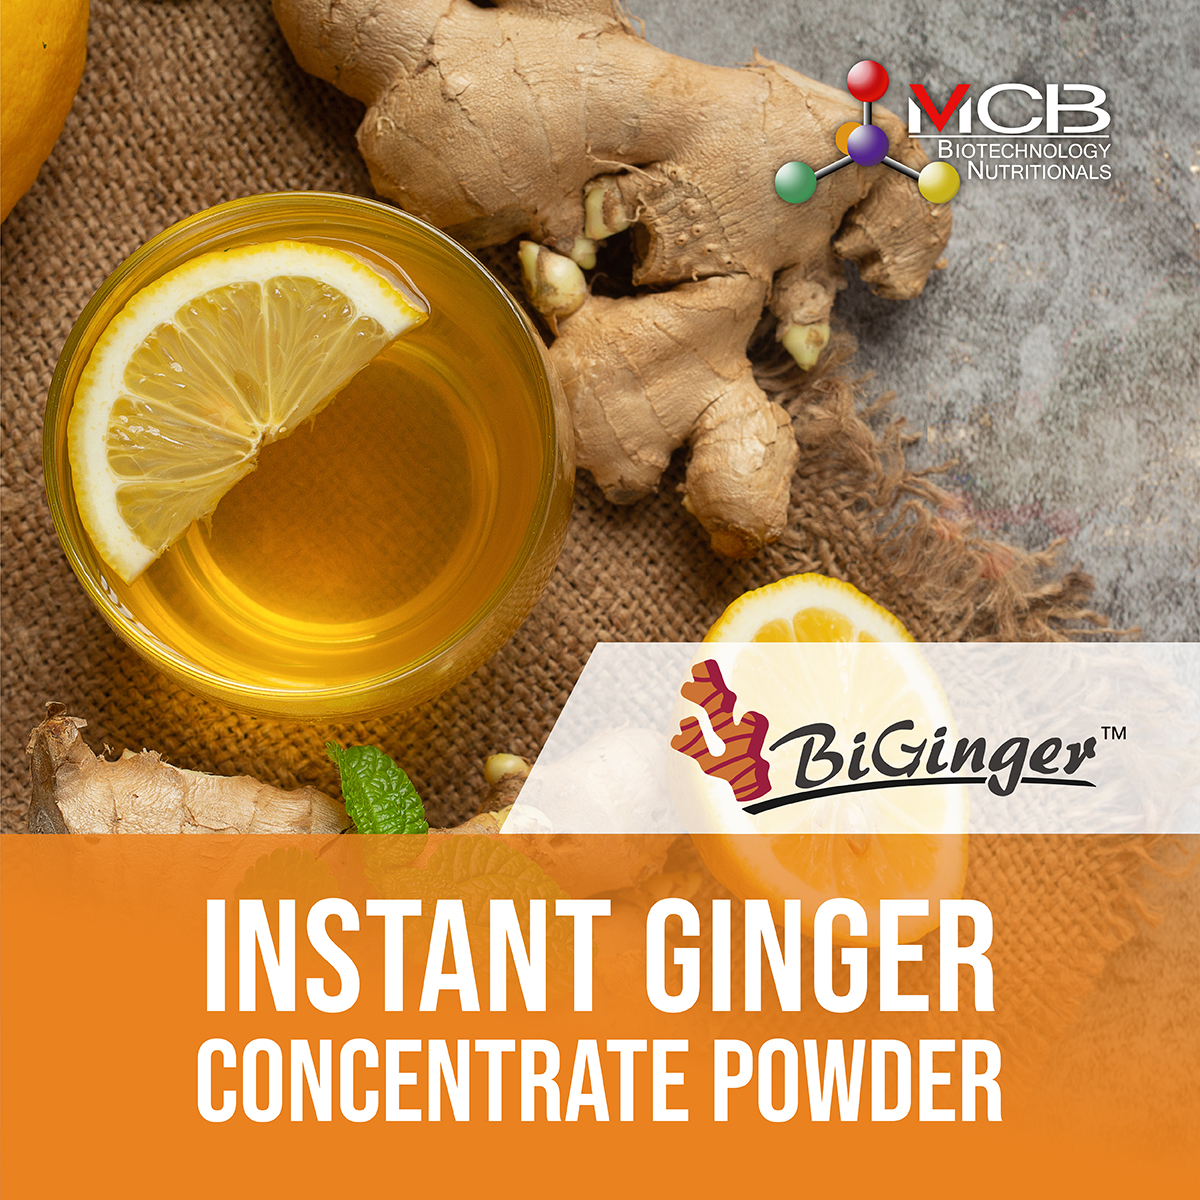 BIGINGER™ Instant Ginger Concentrate Powder